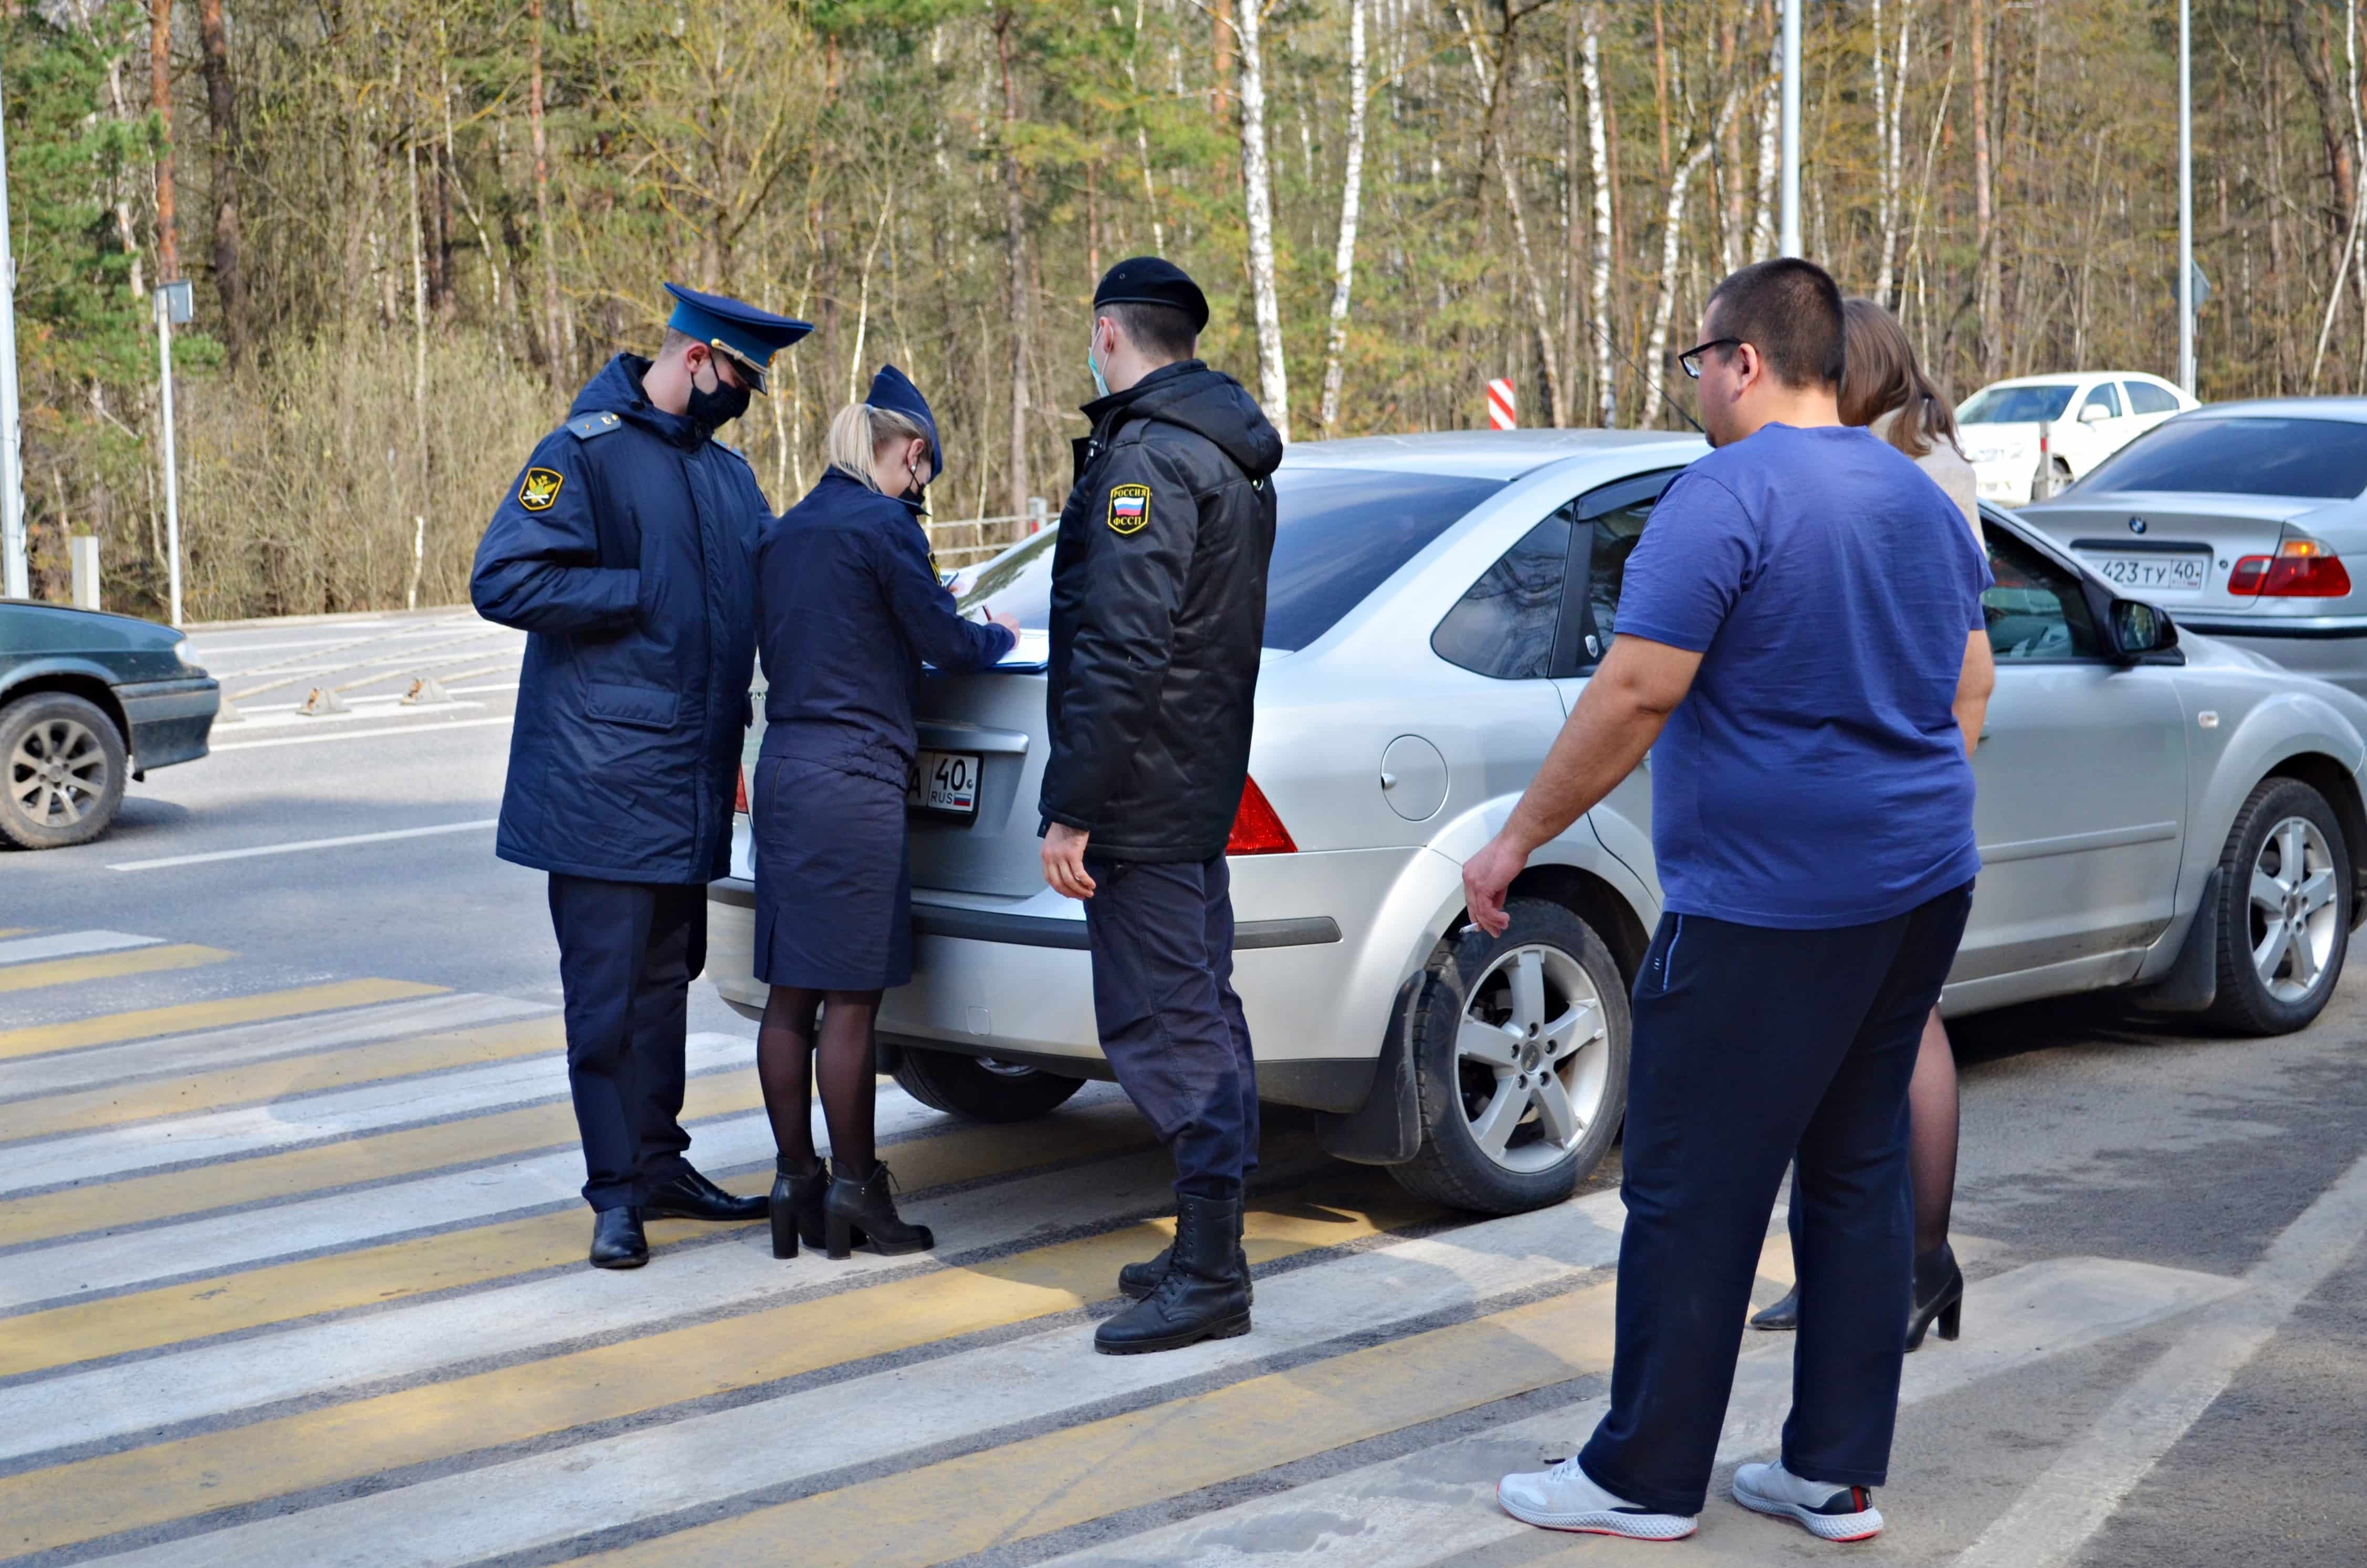 Рейд судебных приставов. Машина под арестом. Приставы арестовали машину за долги в Иваново. Судебная машина.